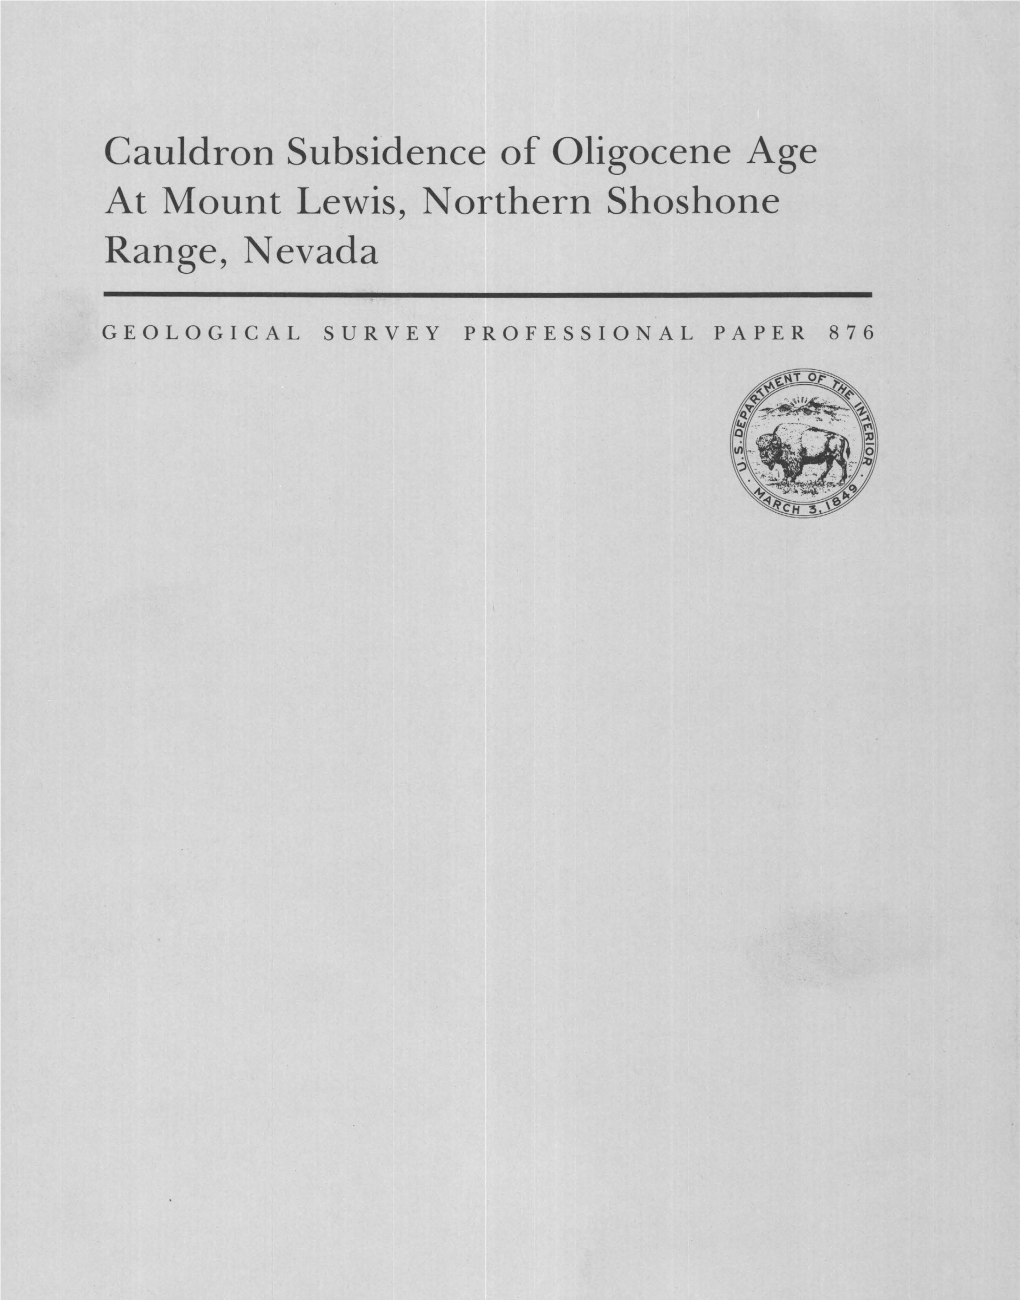 Cauldron Subsidence of Oligocene Age at Mount Lewis, Northern Shoshone Range, Nevada